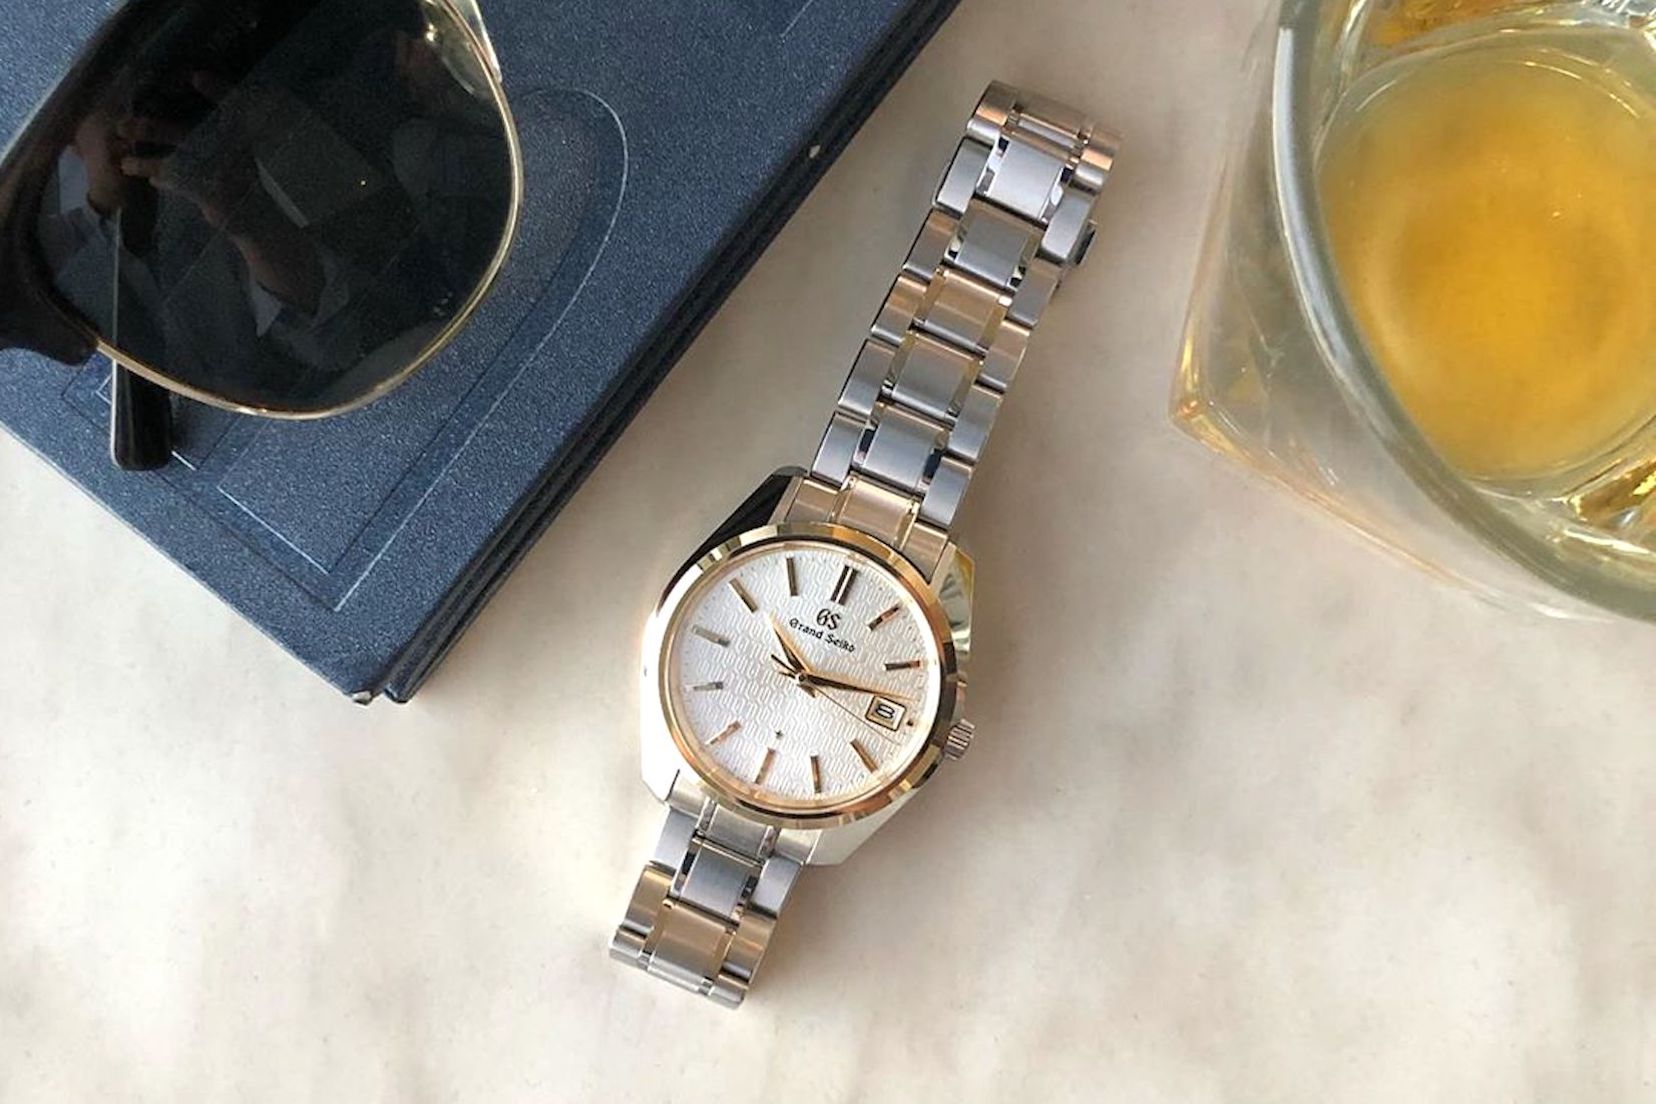 10 nhà sưu tầm đồng hồ nổi tiếng trên Instagram